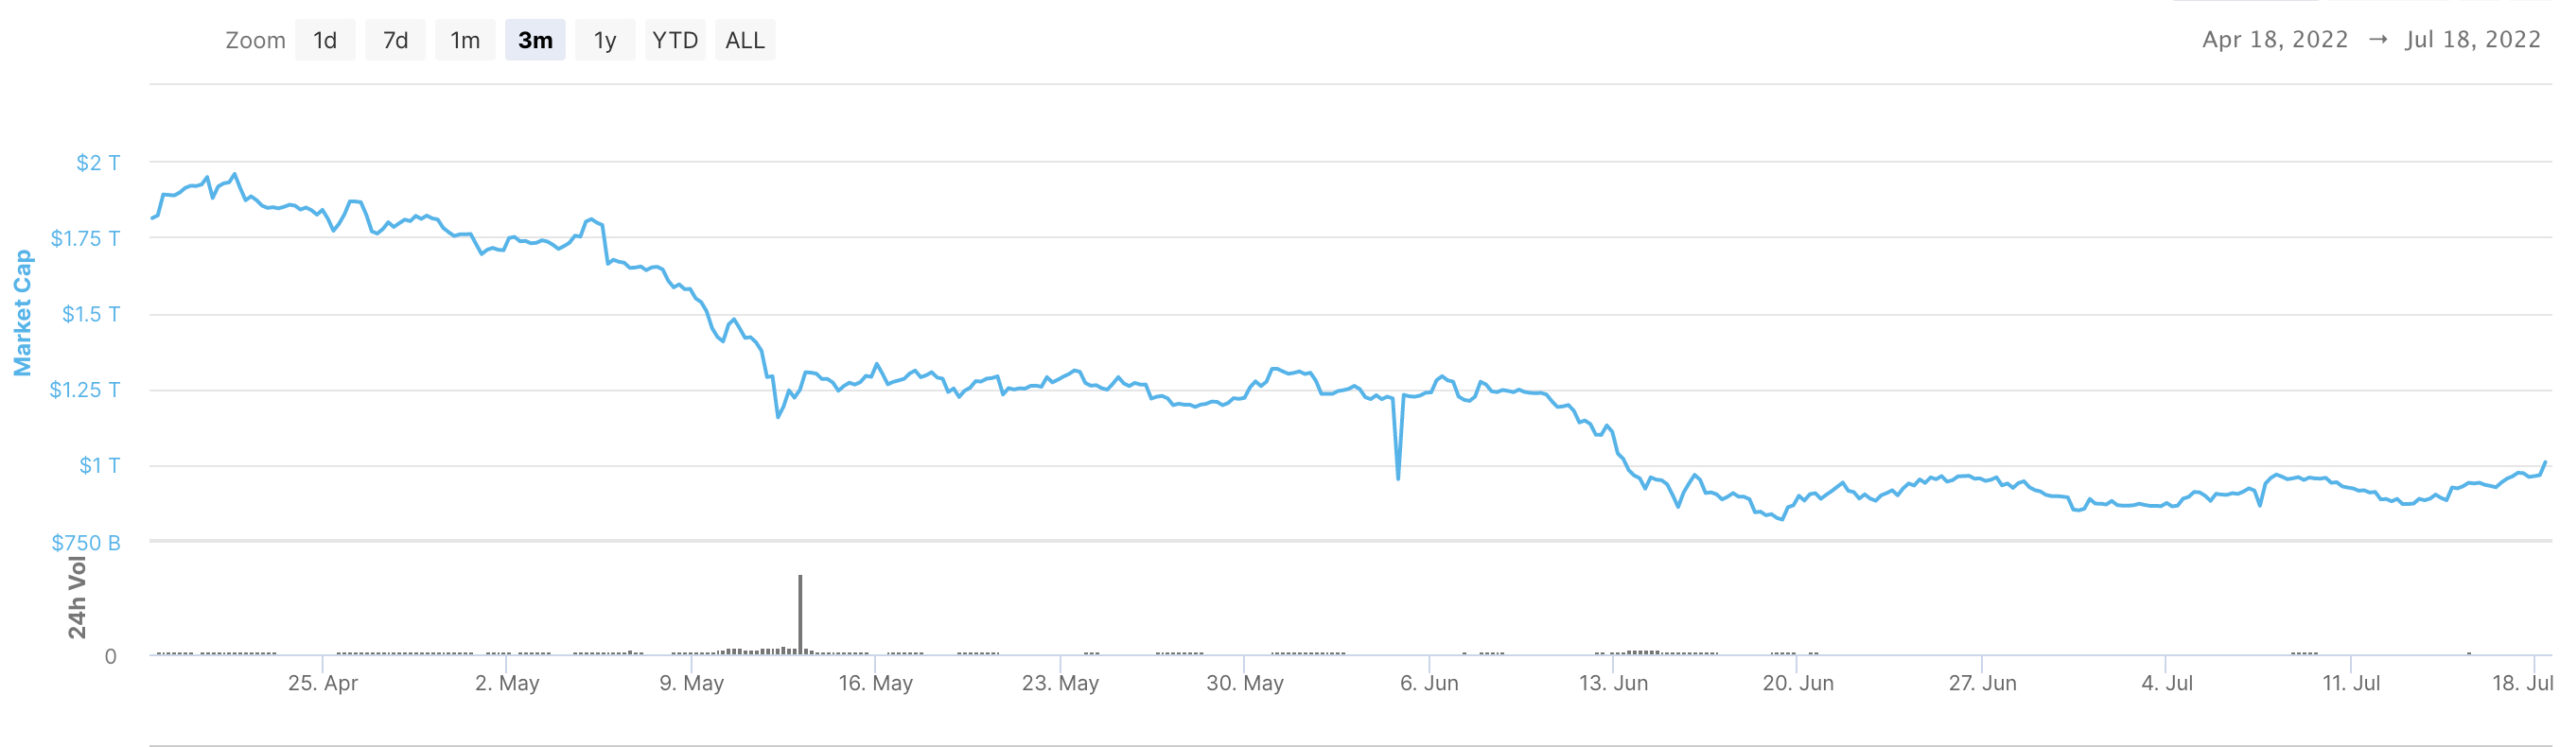 Rynek kryptowalut ponownie z kapitalizacją rynkową na poziomie biliona dolarów. Kurs bitcoina powyżej 22 tys. USD